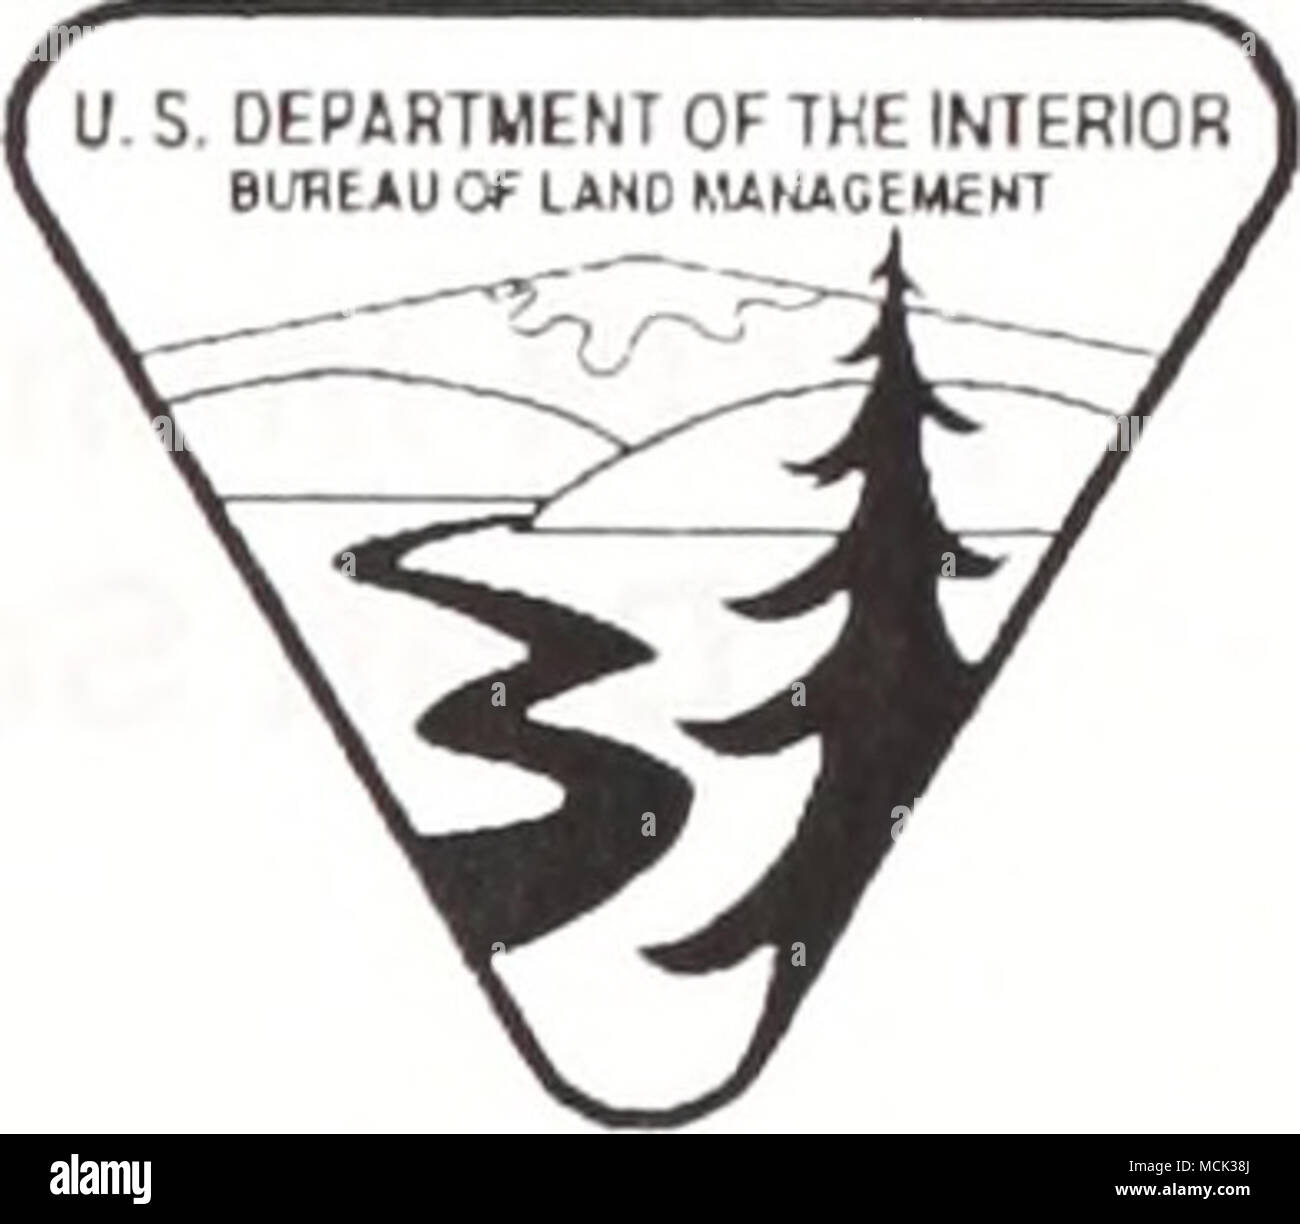 United States Department Of The Interior Bureau Of Land